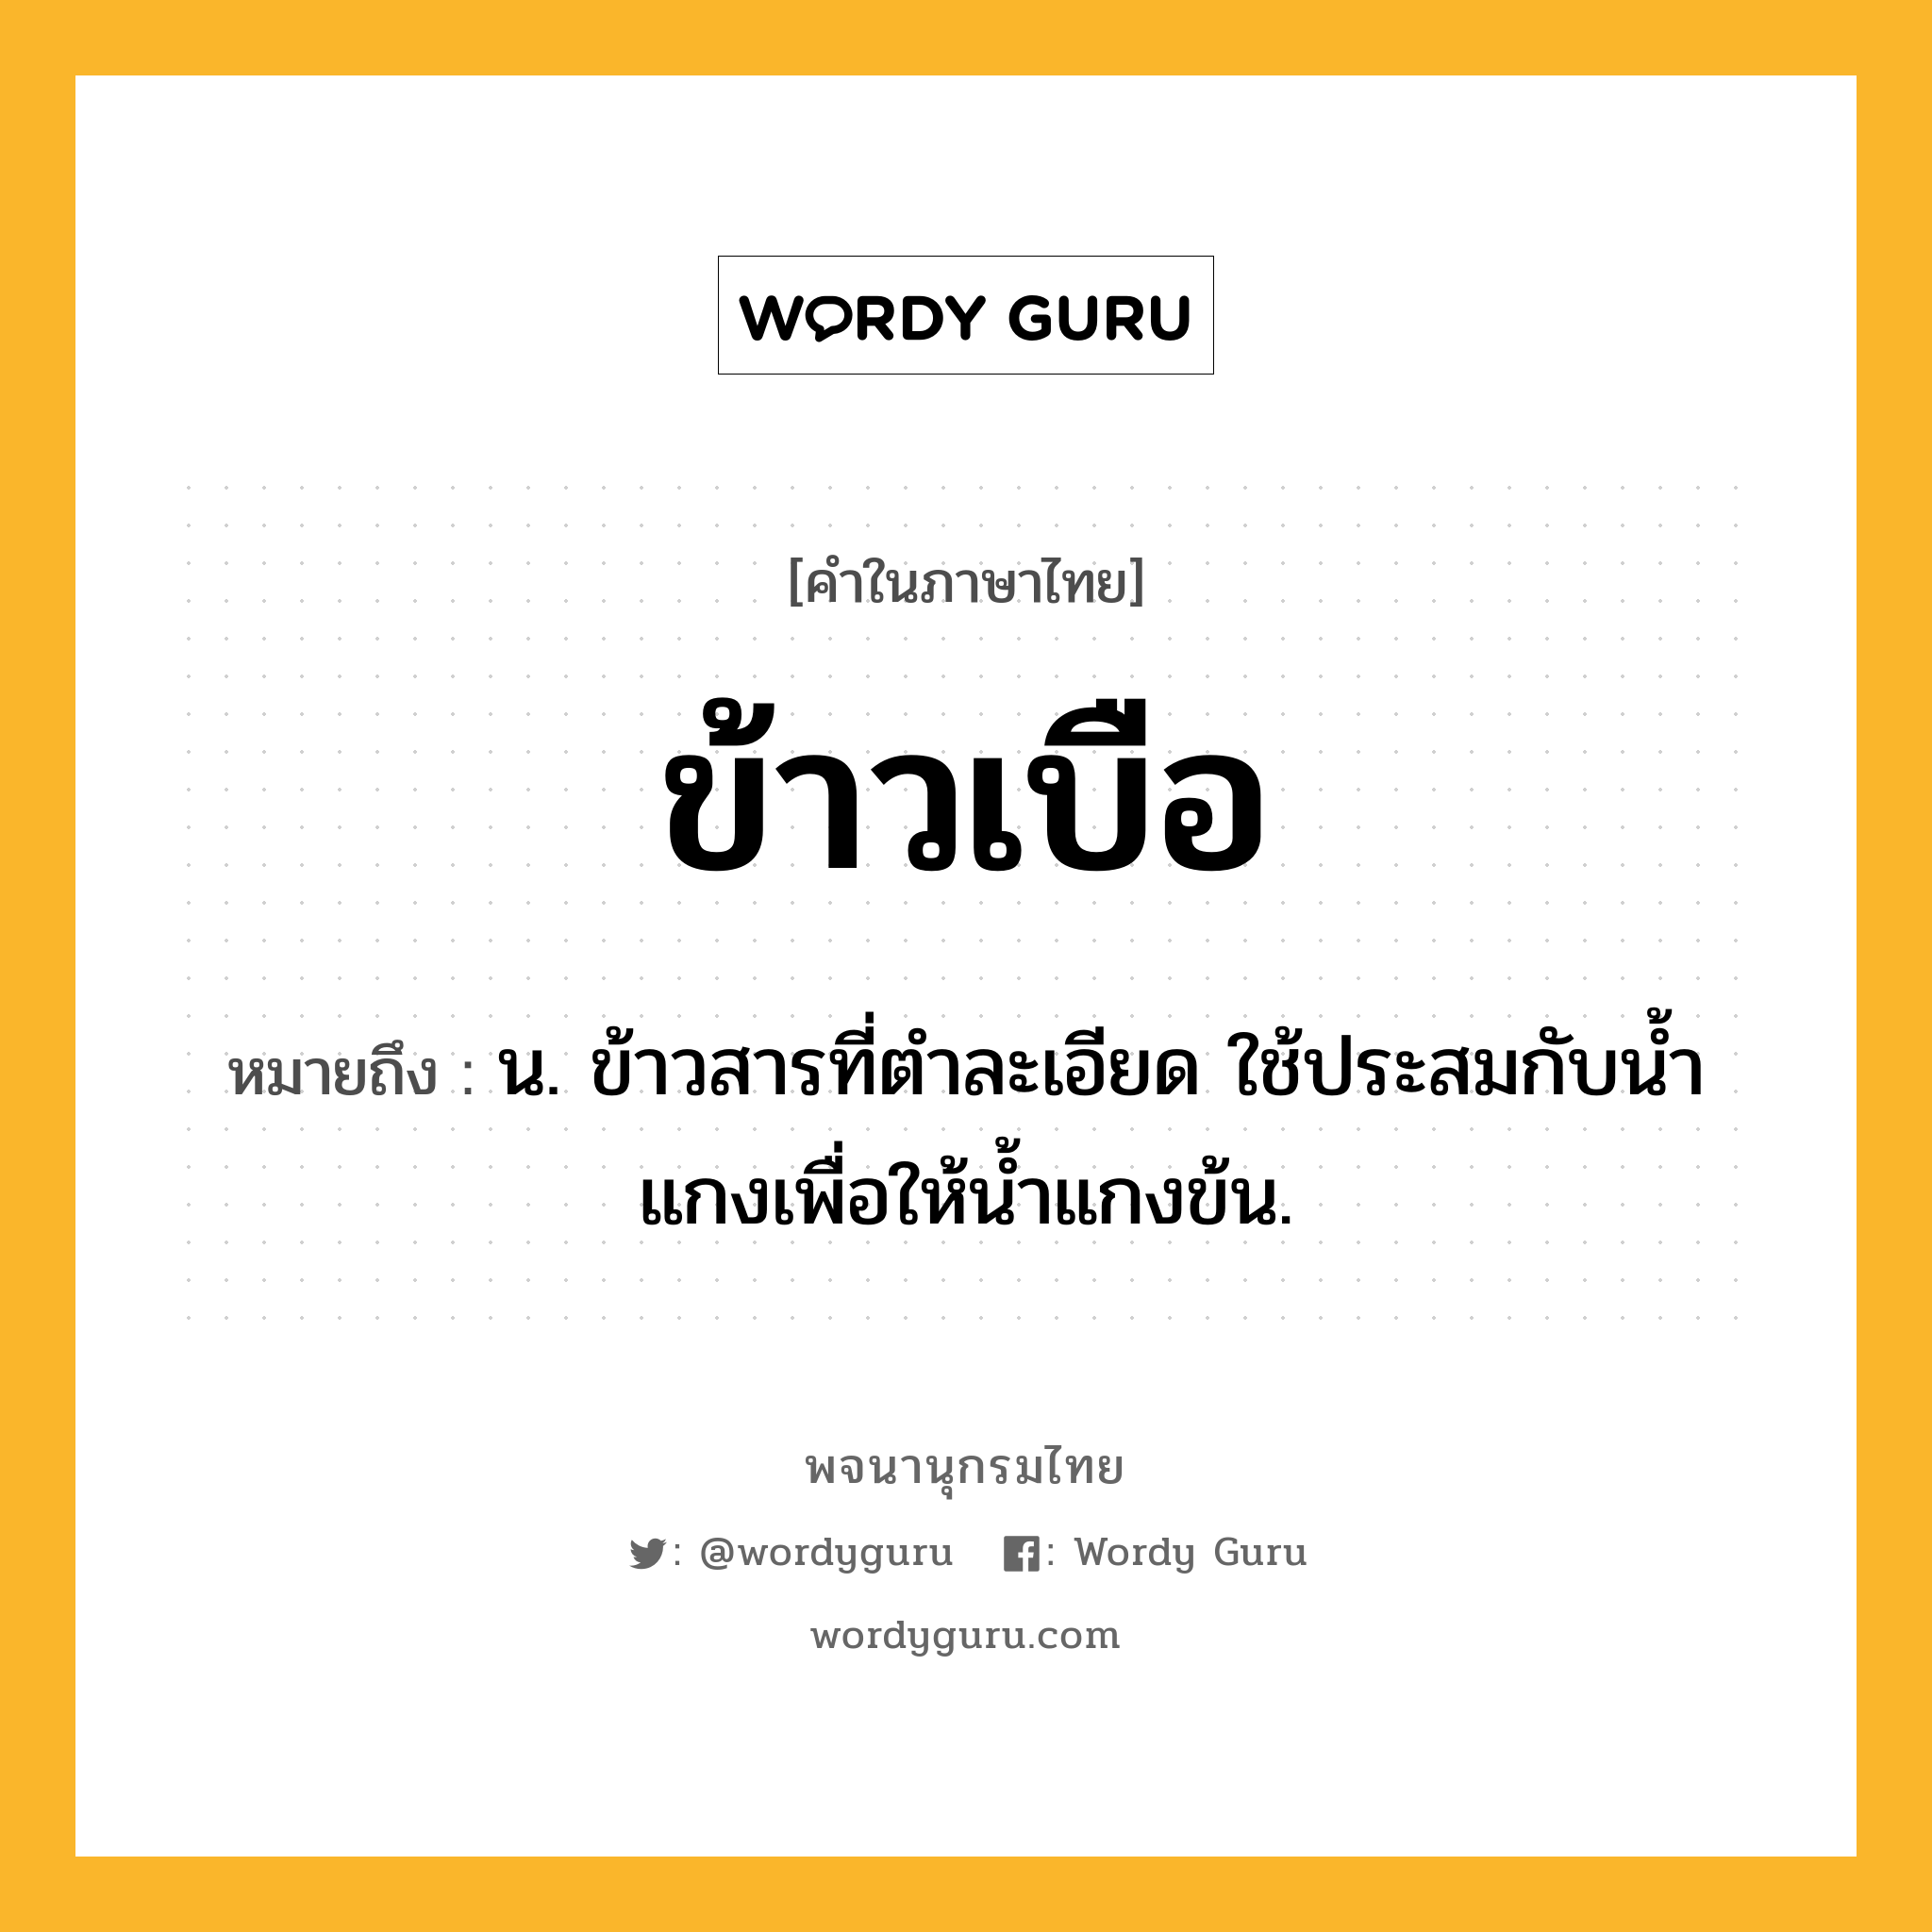 ข้าวเบือ หมายถึงอะไร?, คำในภาษาไทย ข้าวเบือ หมายถึง น. ข้าวสารที่ตําละเอียด ใช้ประสมกับนํ้าแกงเพื่อให้นํ้าแกงข้น.